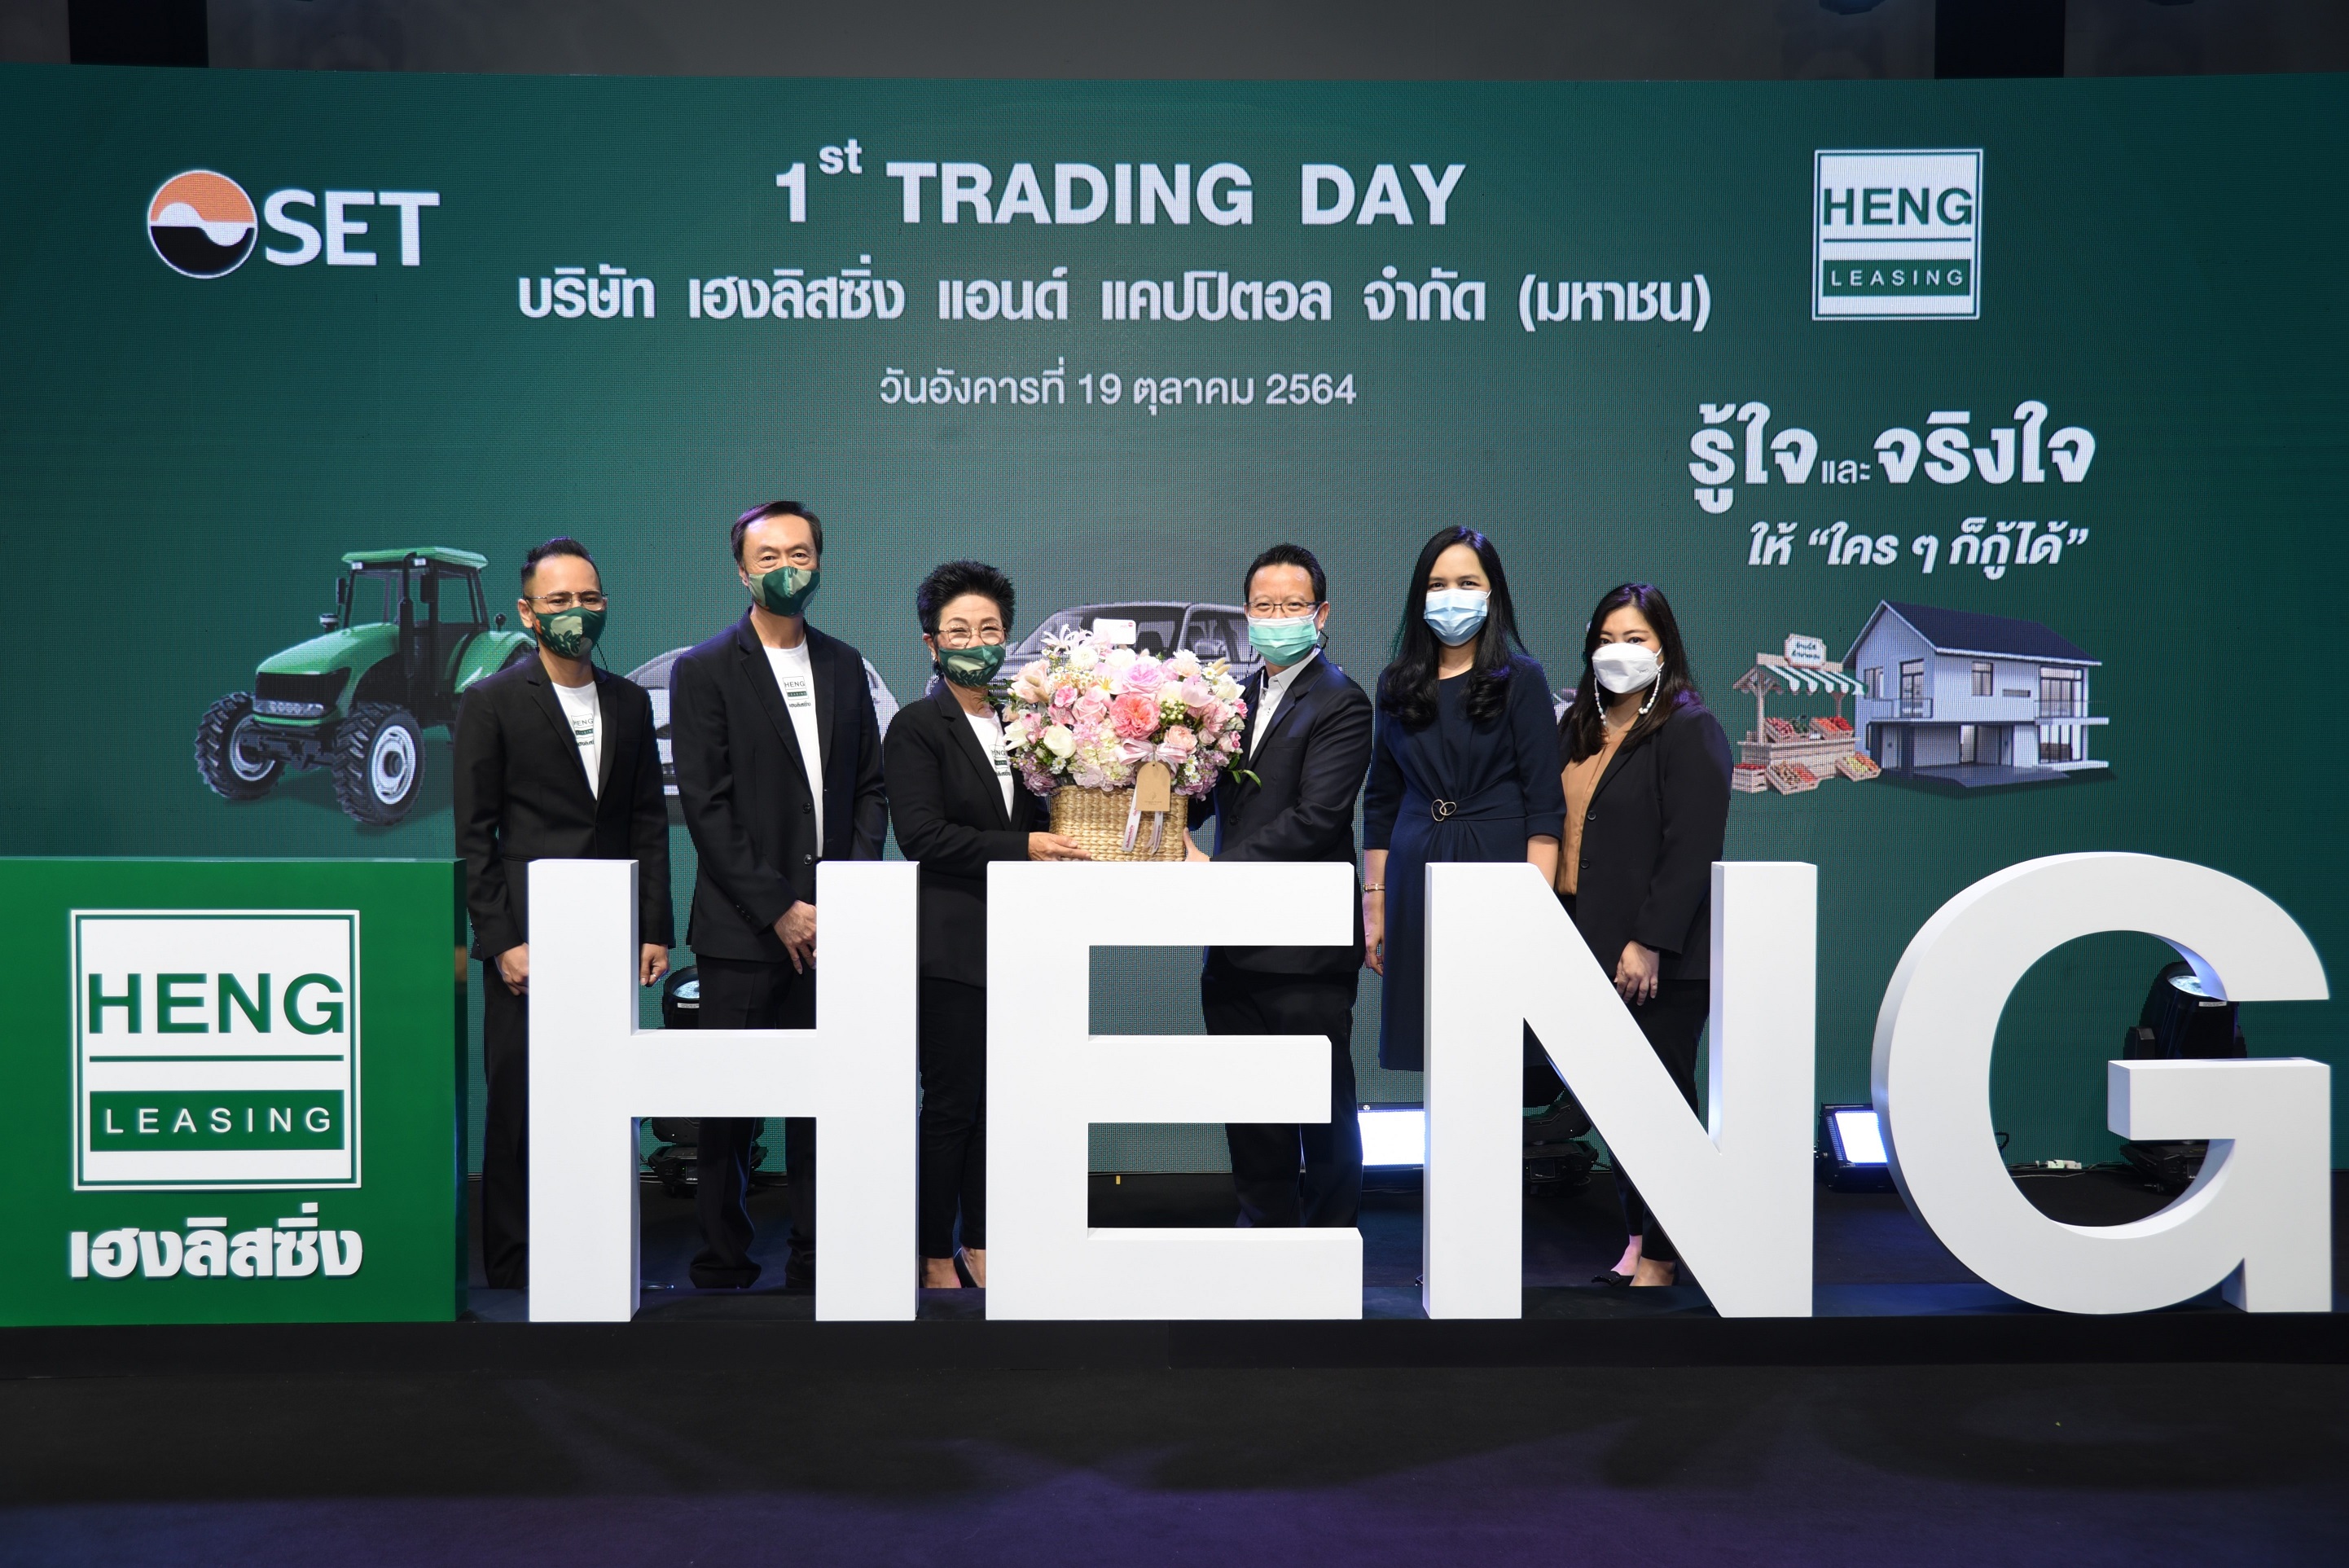 เมืองไทยประกันชีวิต ร่วมแสดงความยินดีกับพันธมิตรทางธุรกิจ  บมจ. เฮงลิสซิ่ง แอนด์ แคปปิตอล โอกาส 1st Trading Day